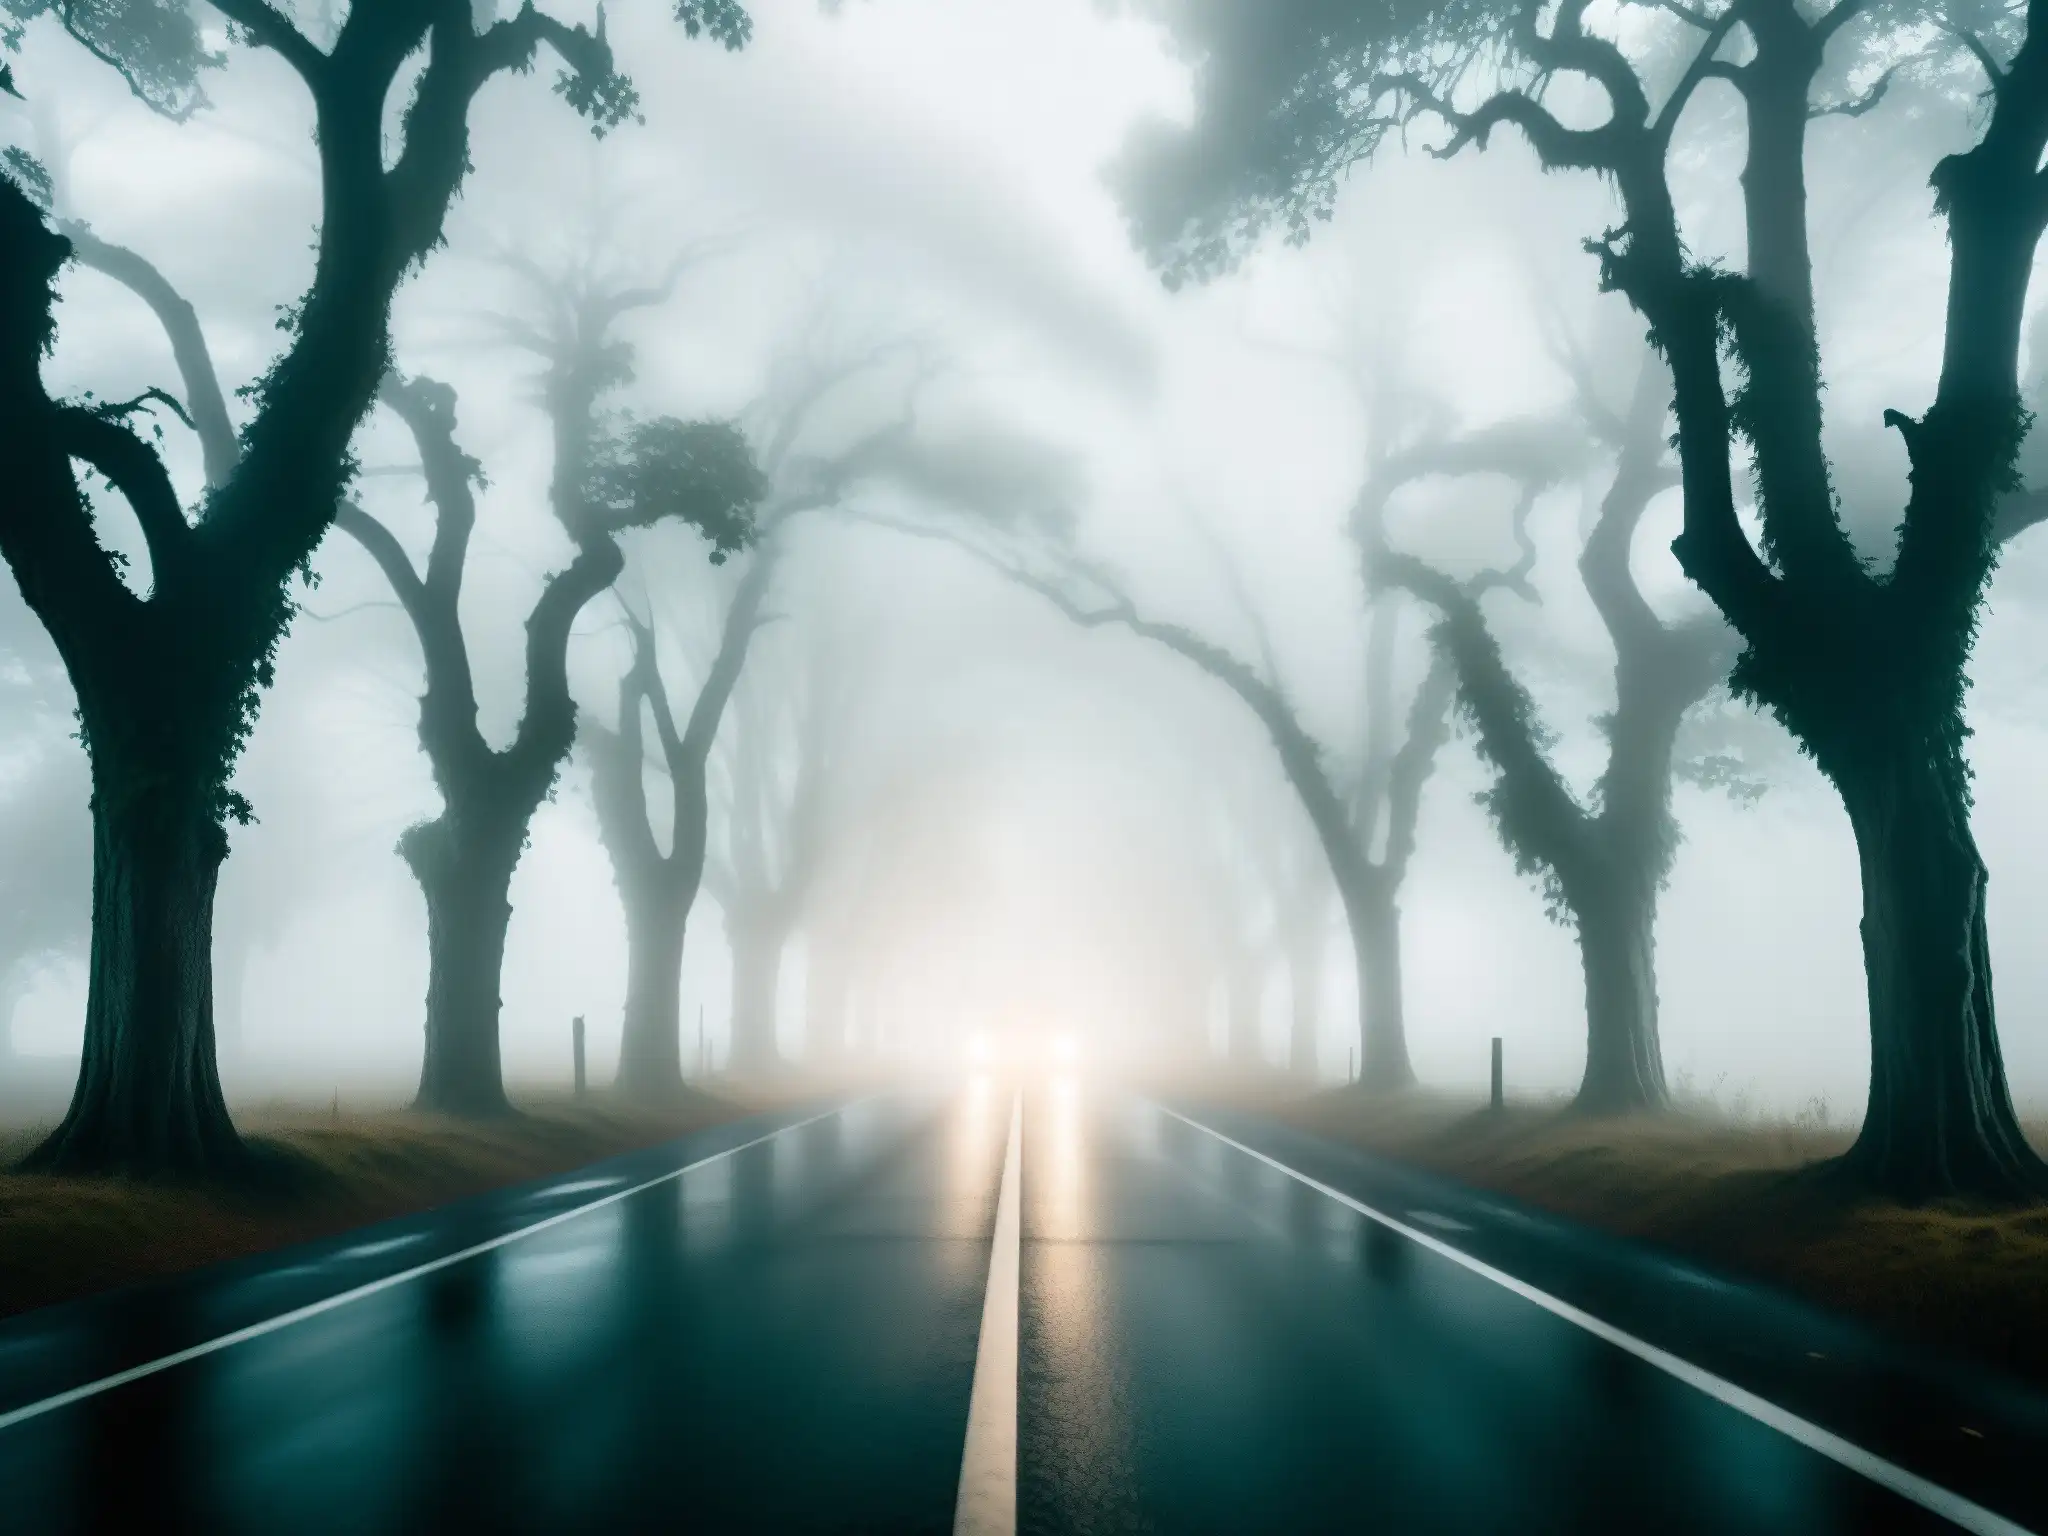 Un solitario coche ilumina una misteriosa y tenebrosa carretera cubierta de niebla, evocando vulnerabilidad y misterio